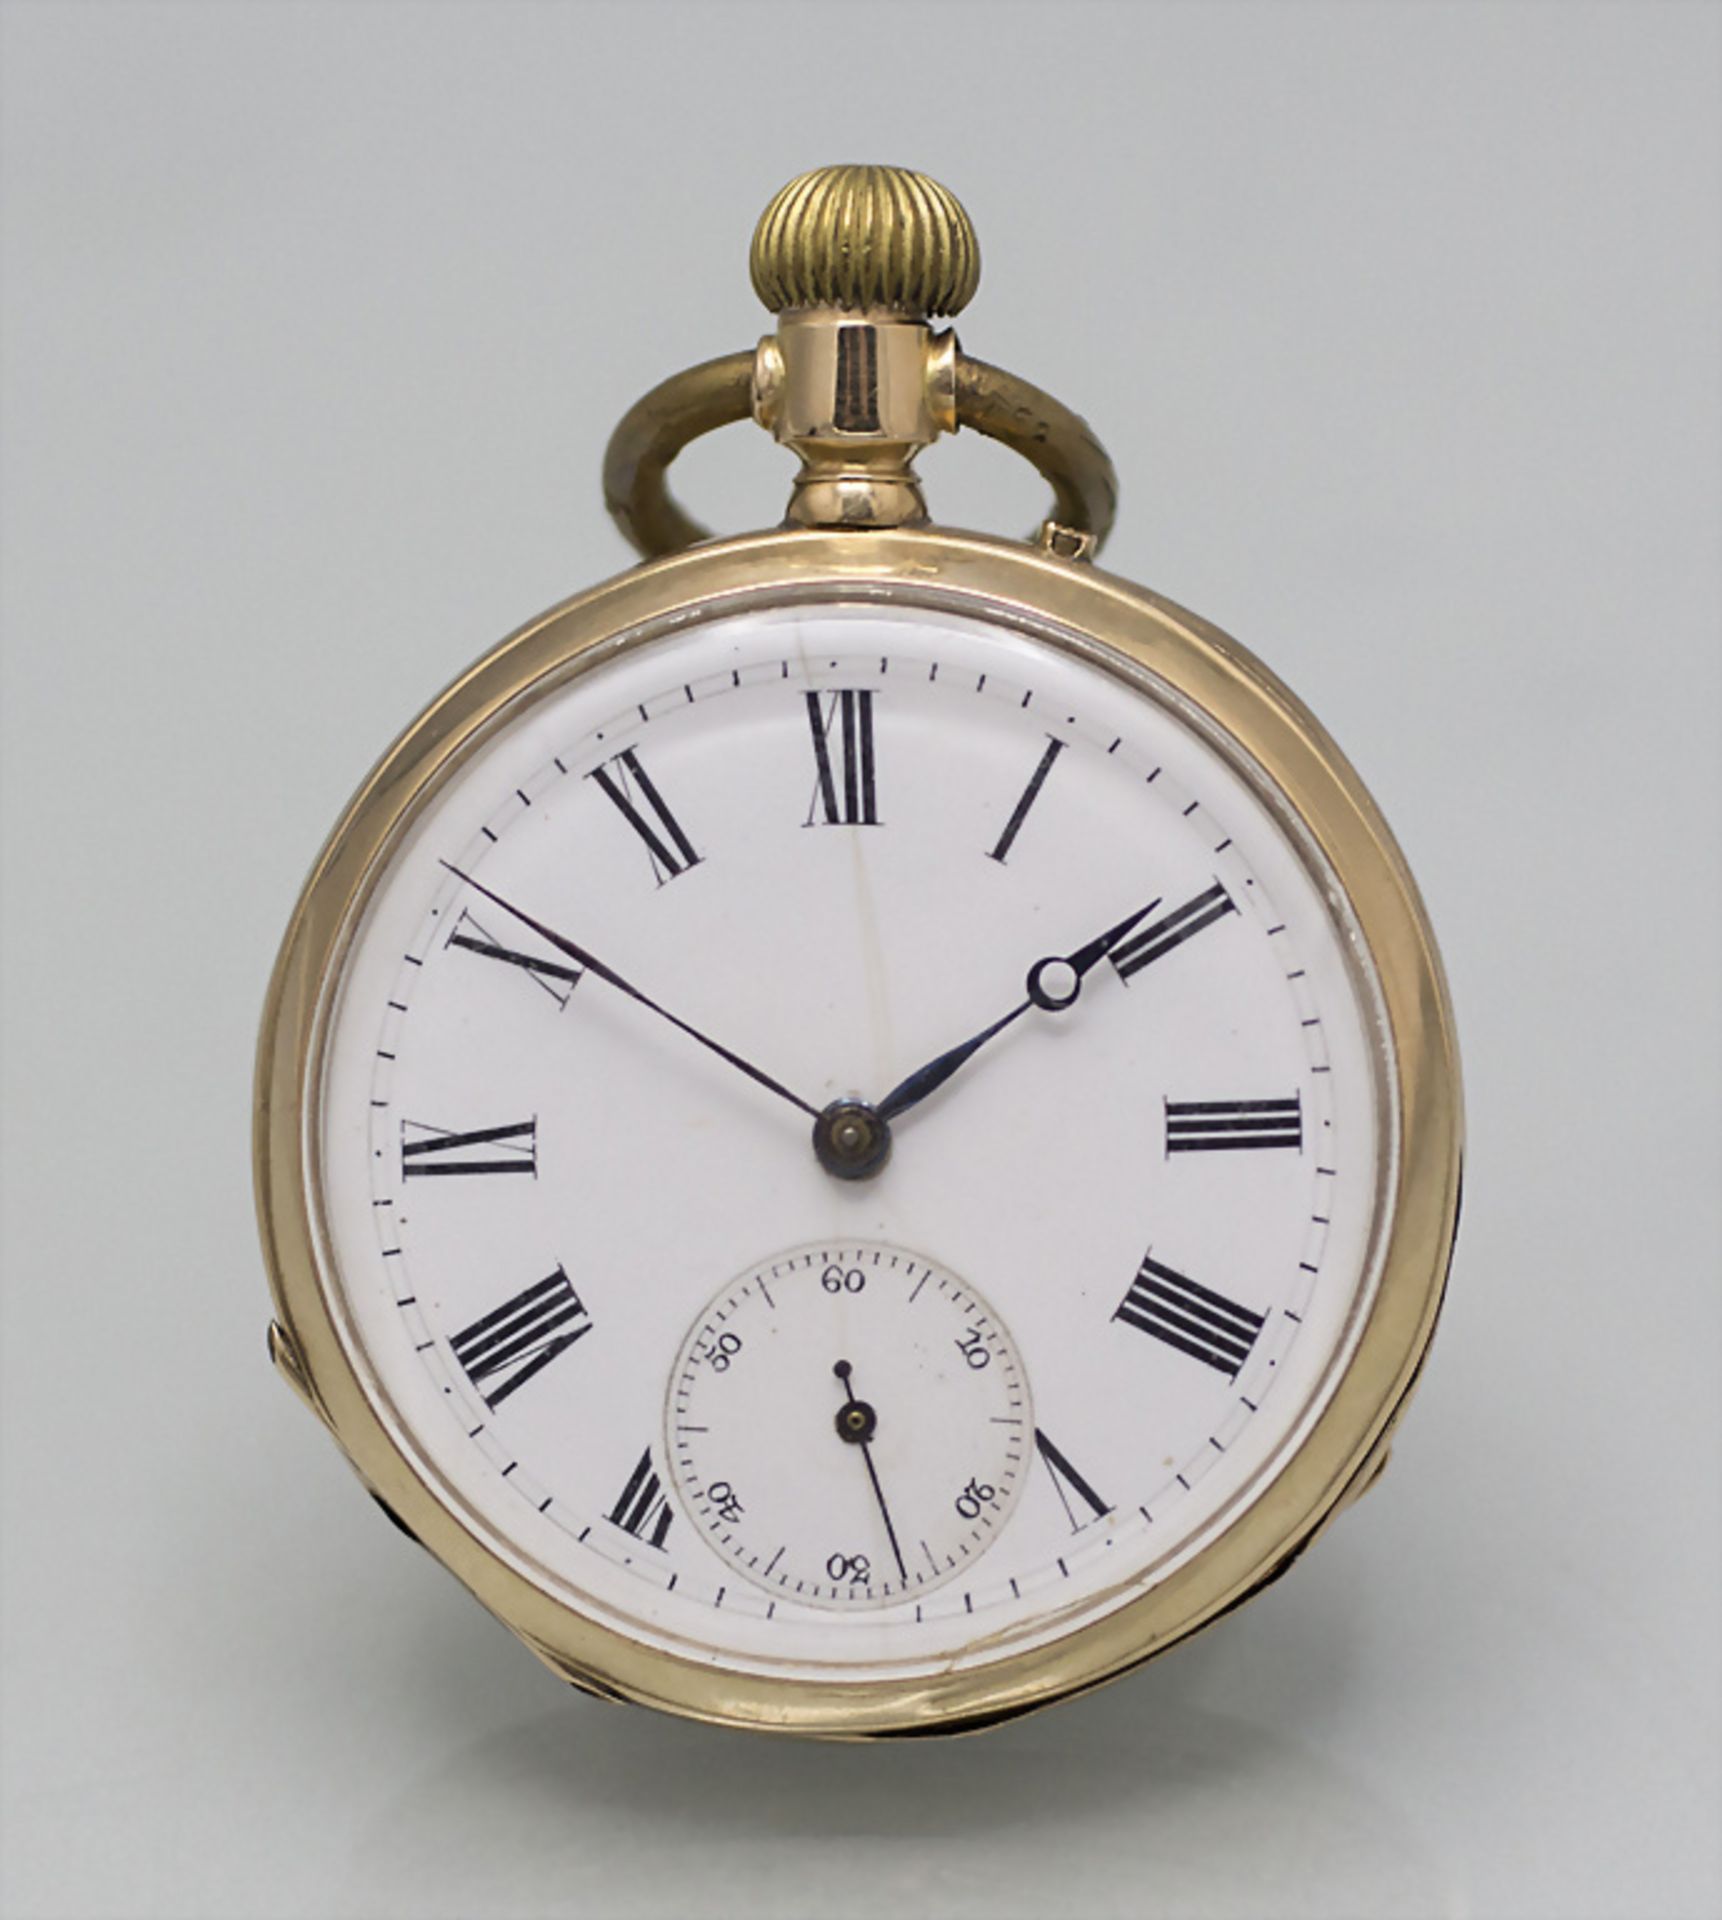 Offene Herrentaschenuhr / An 14 ct gold pocket watch, um 1900